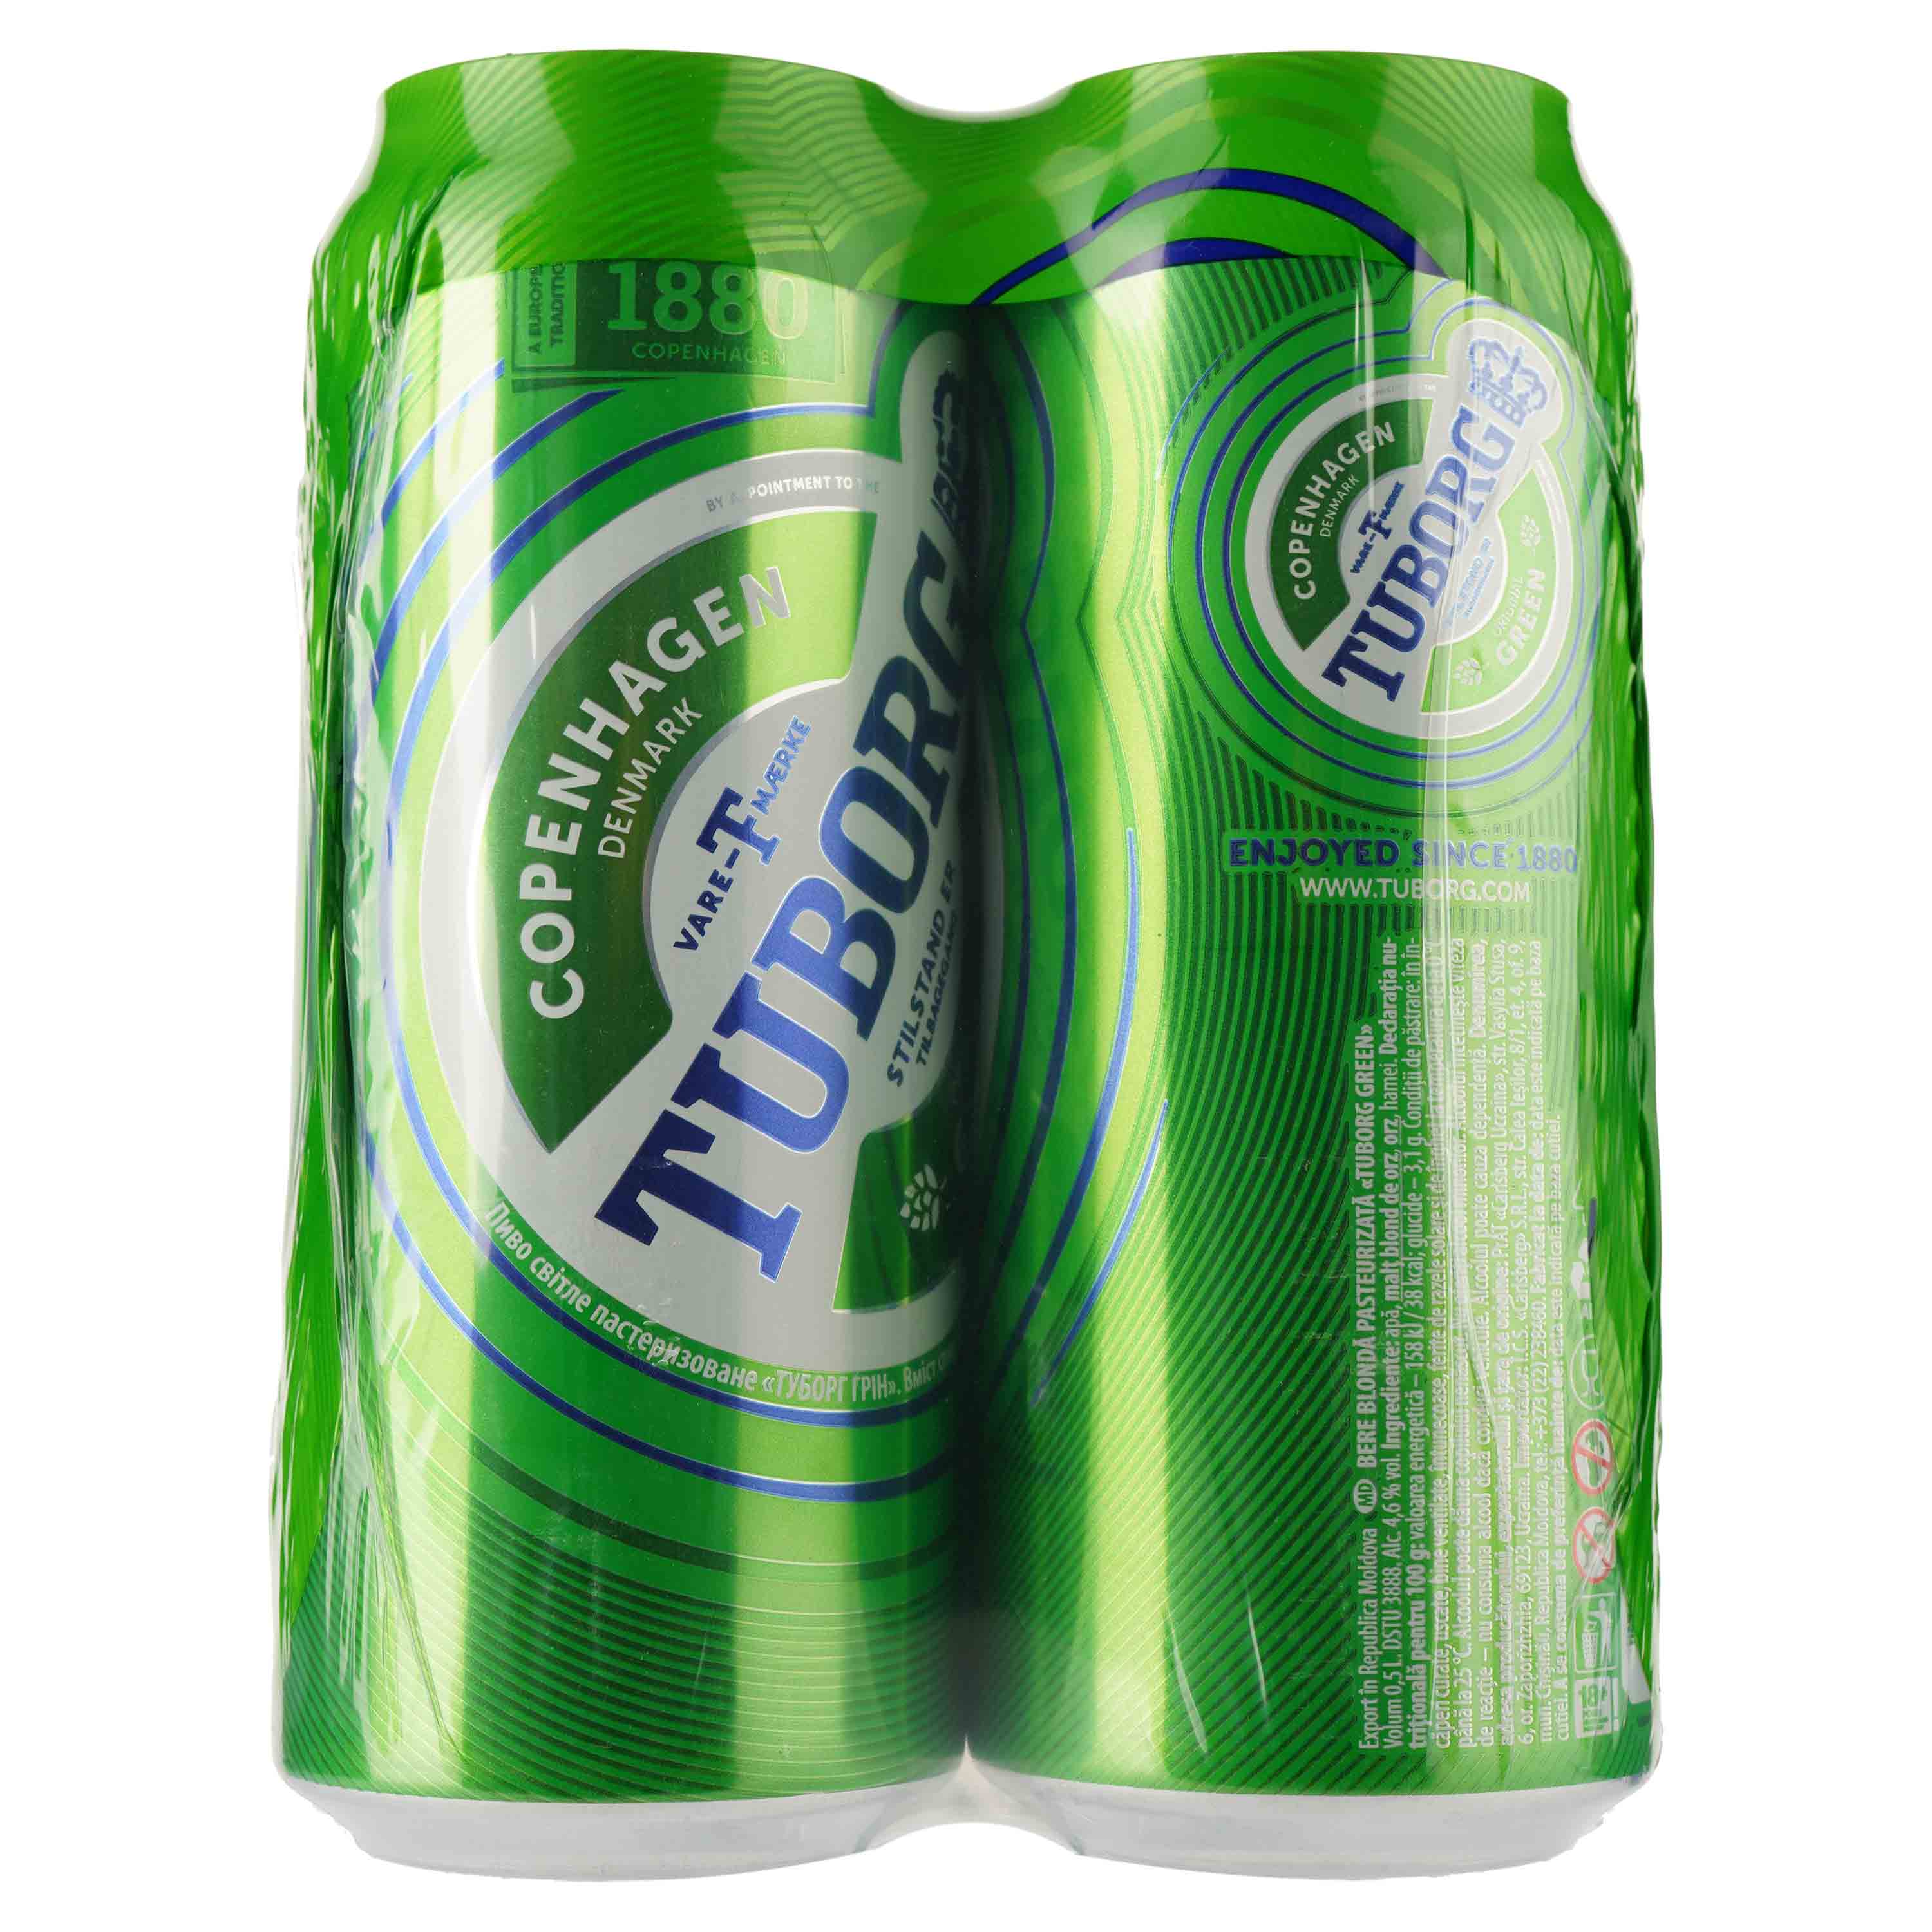 Пиво Tuborg Green, світле, 4,6%, з/б, 2 л (4 шт. по 0,5 л) (224869) - фото 2